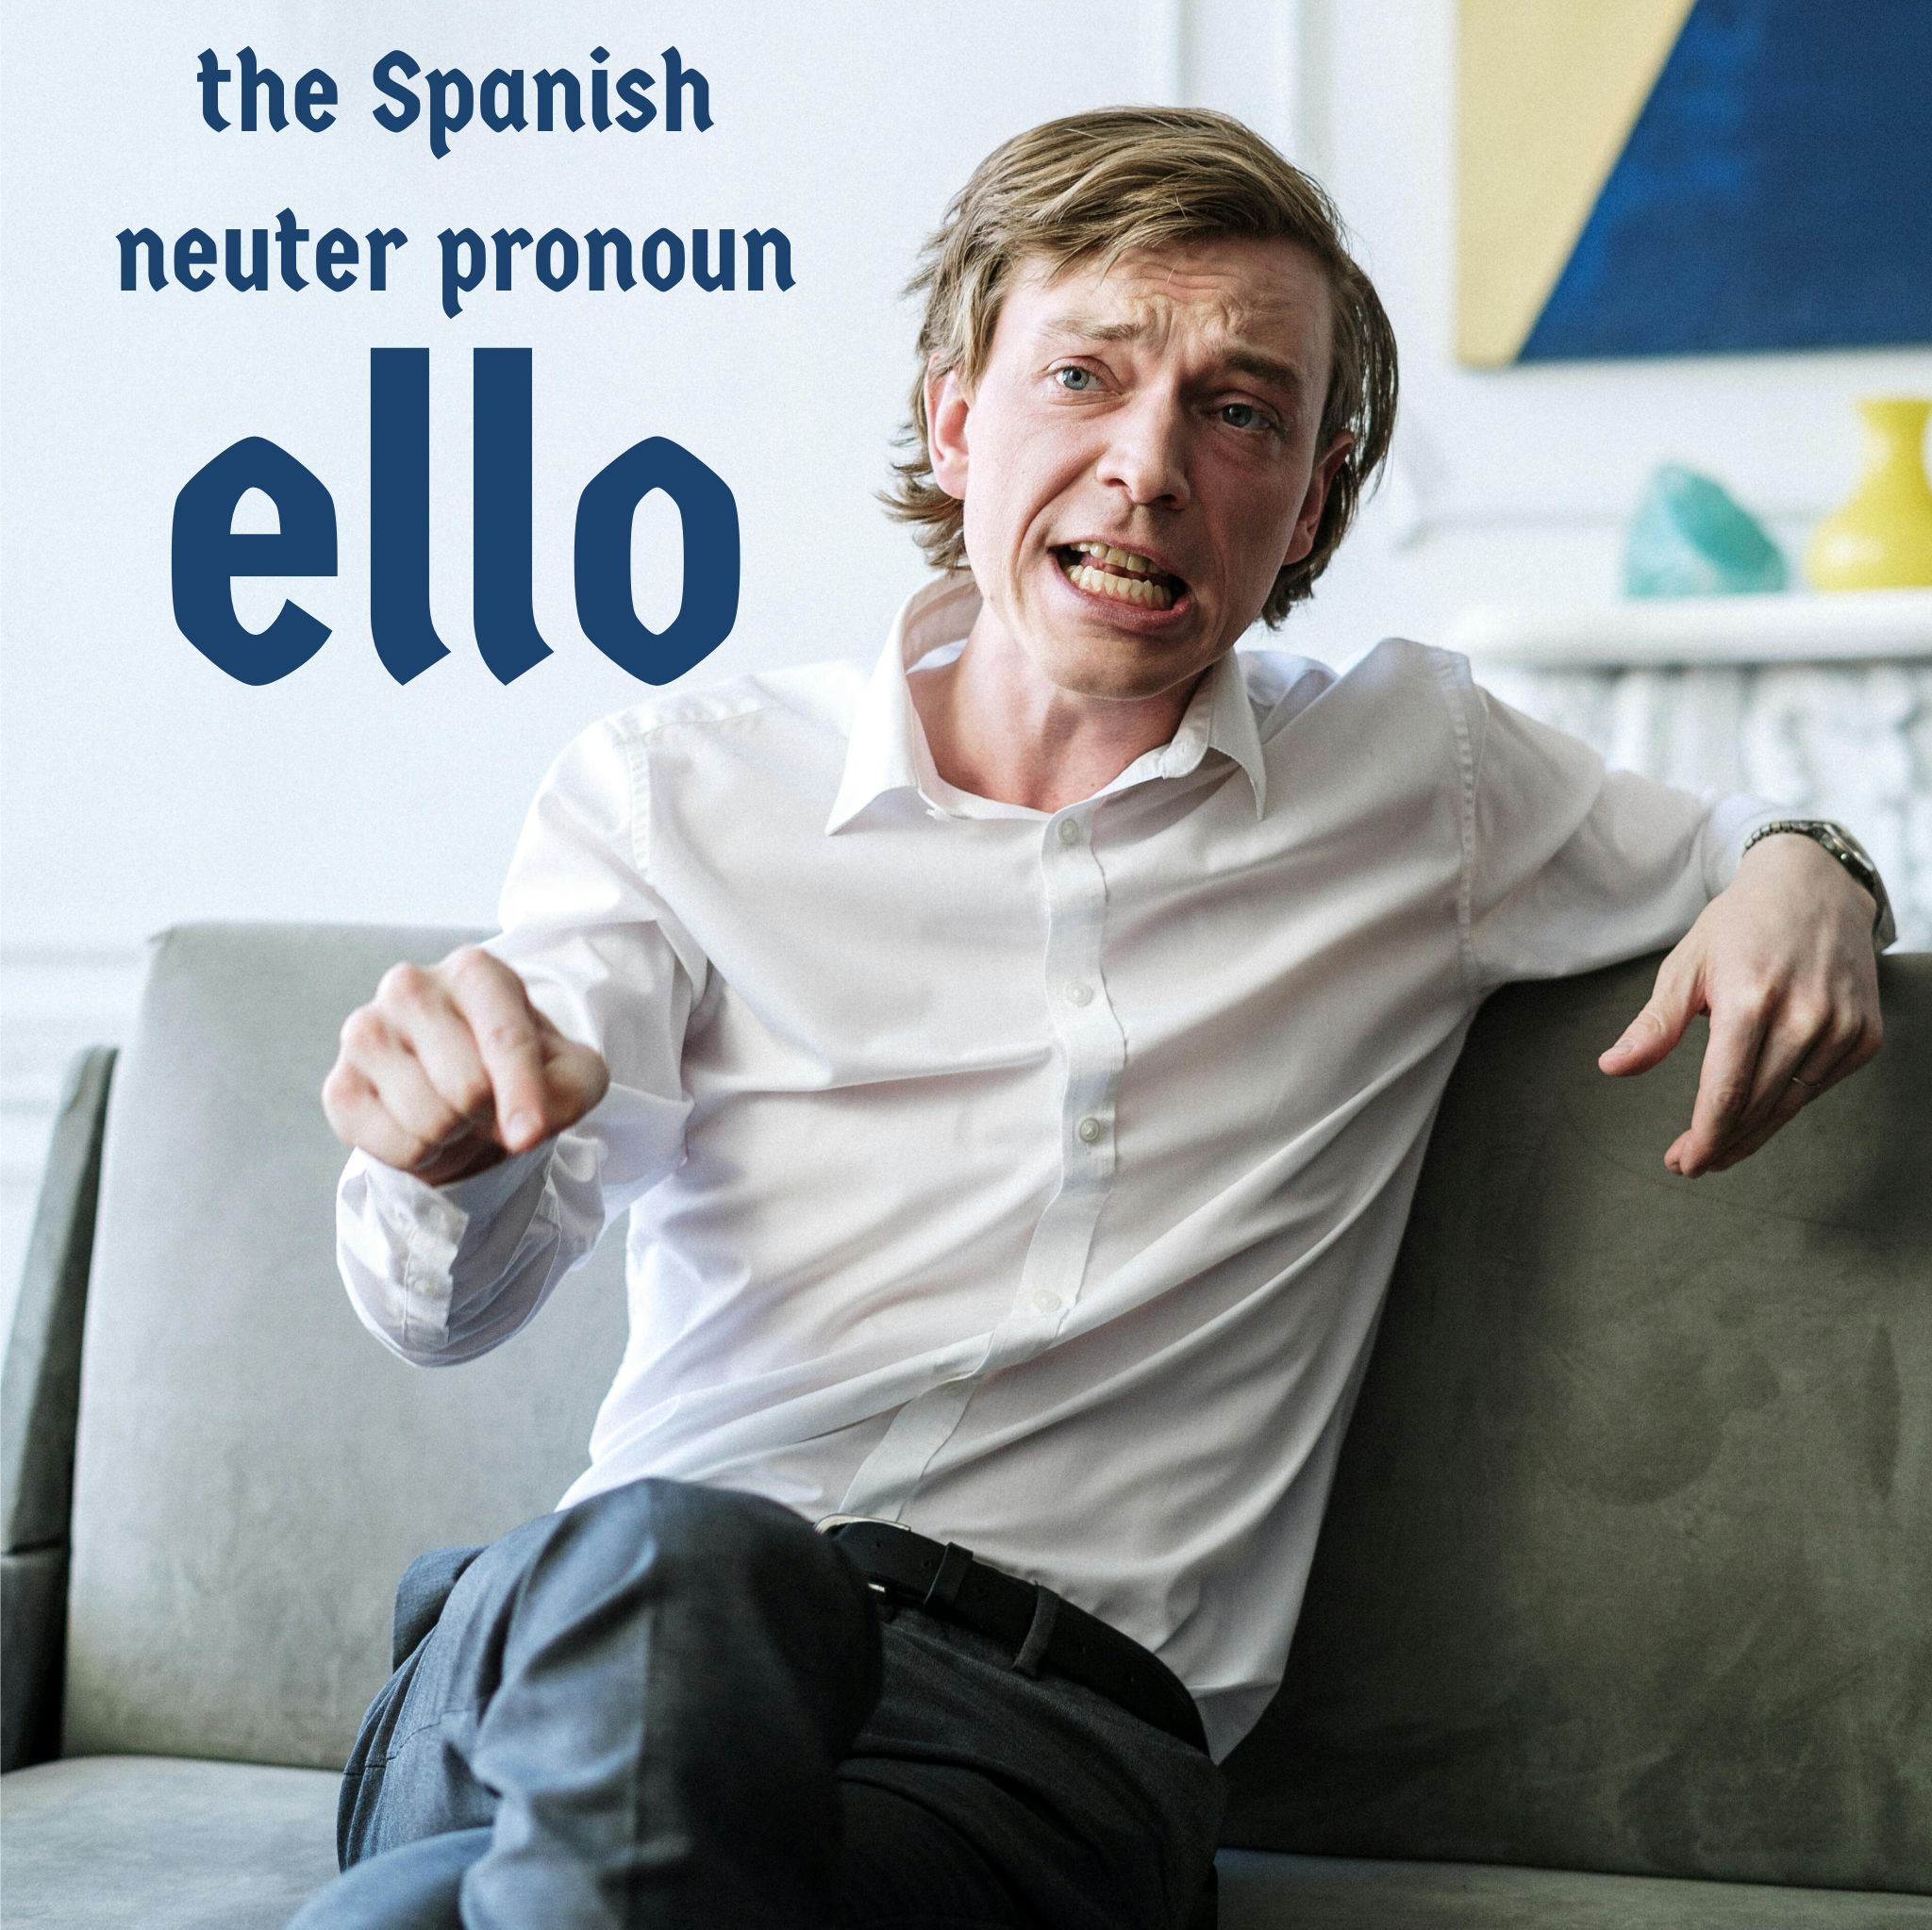 When to use the Spanish neuter pronoun Ello